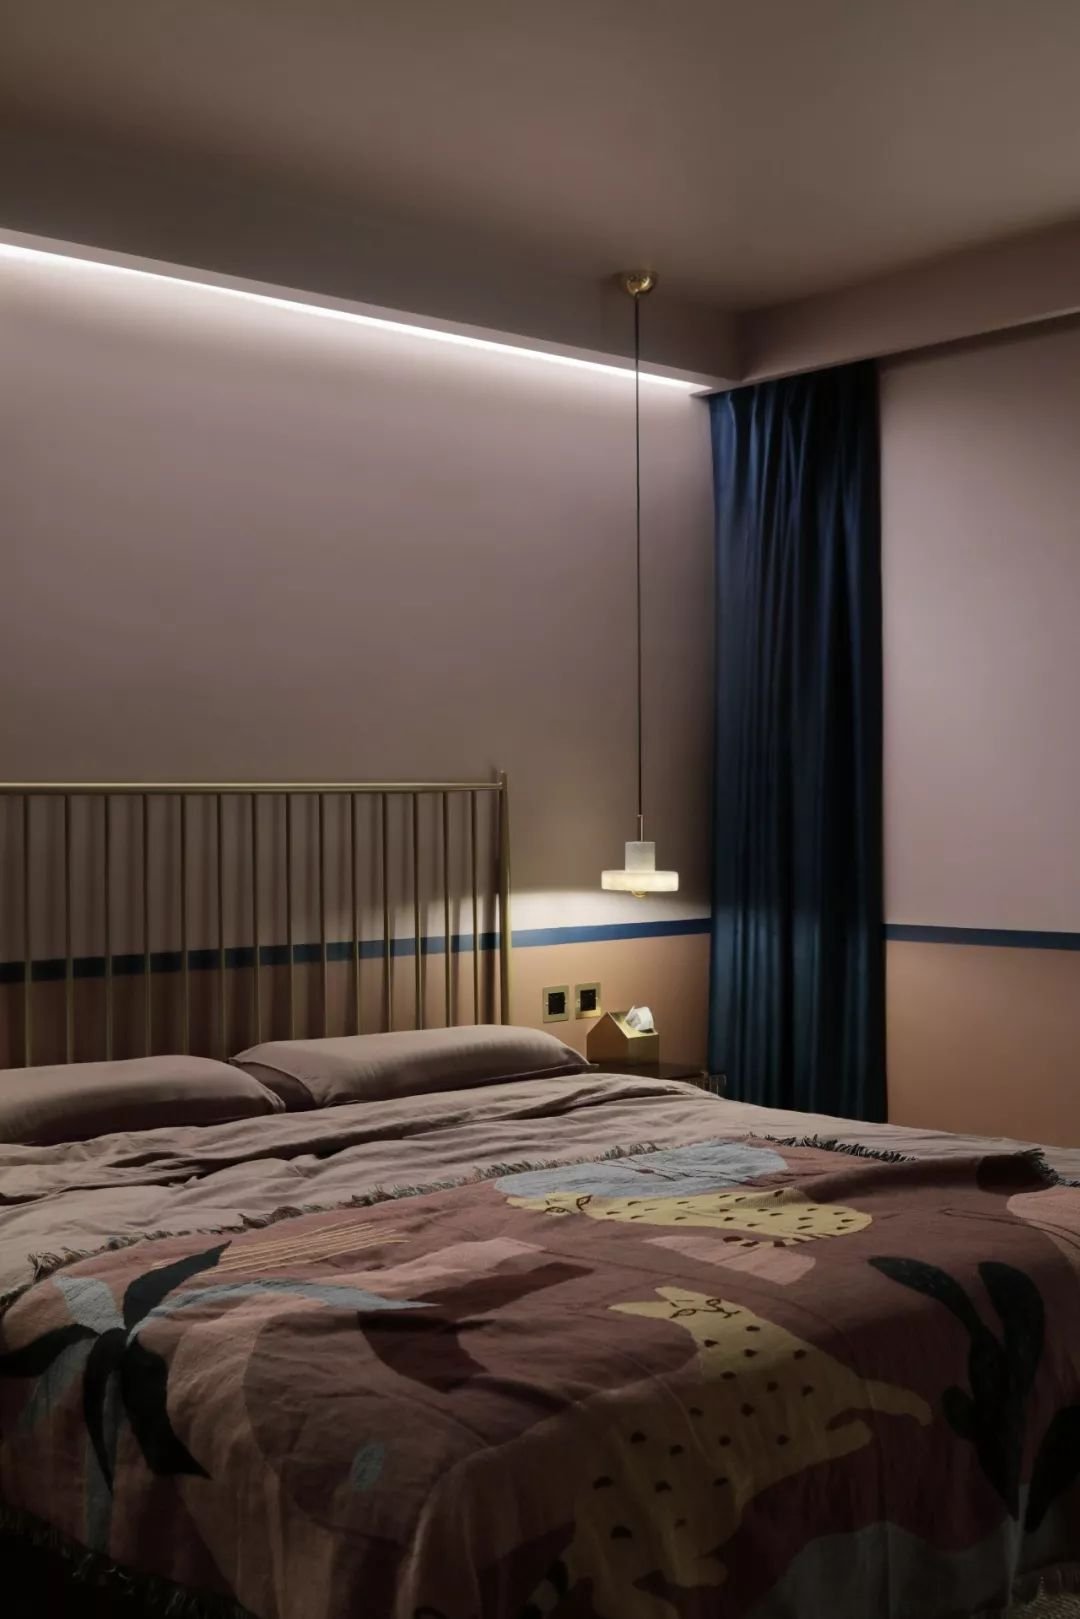 夜晚打开床头吊灯和灯带,卧室的氛围让人很容易安眠,这才是一个卧室该